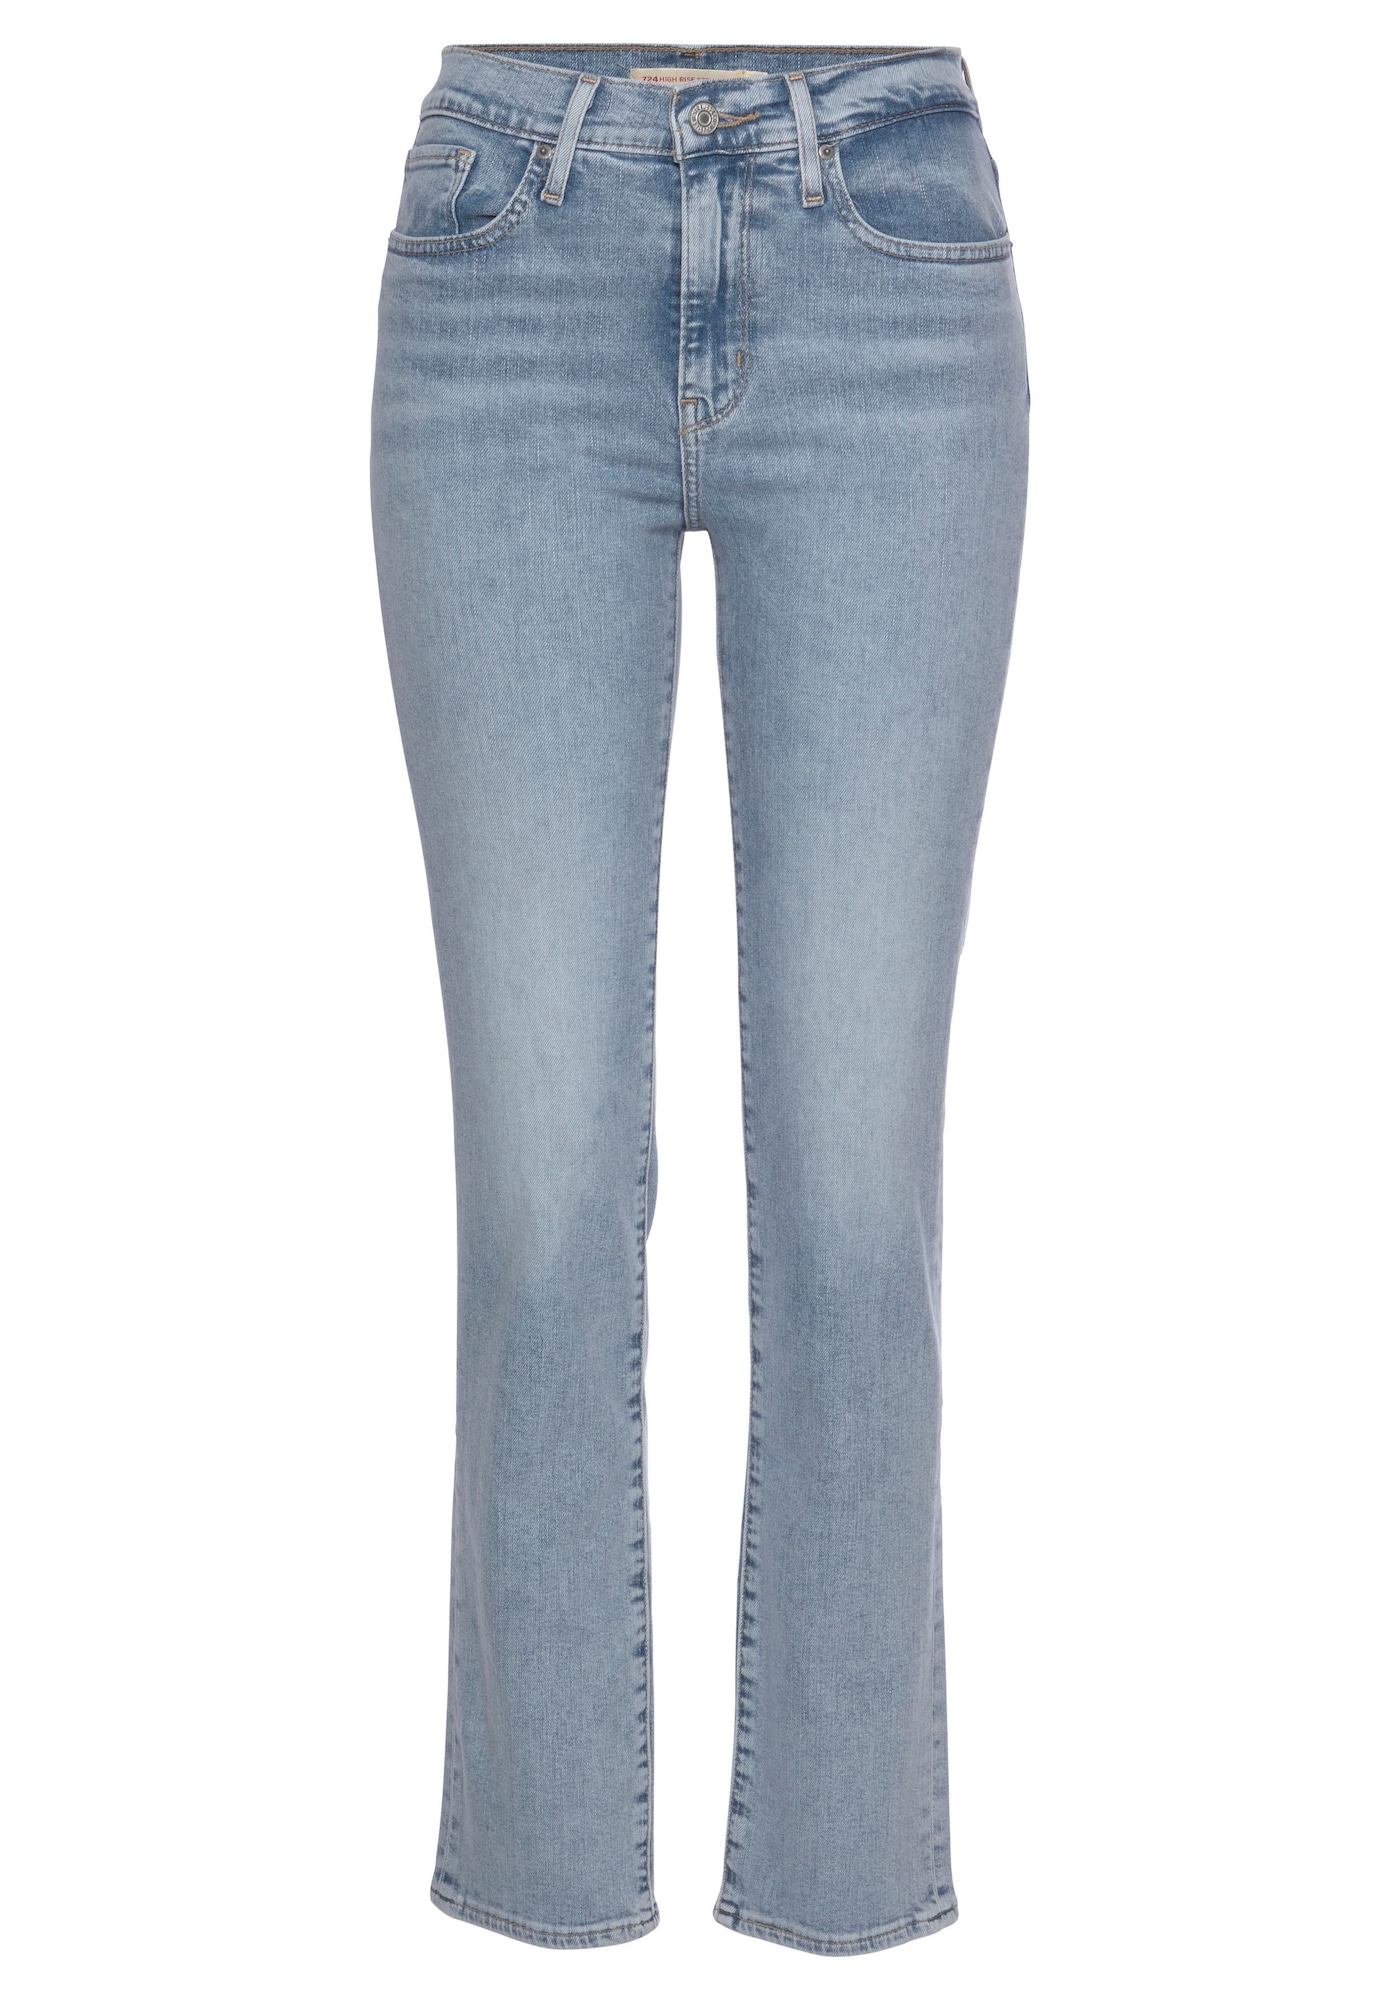 Jeans '724' von Levis